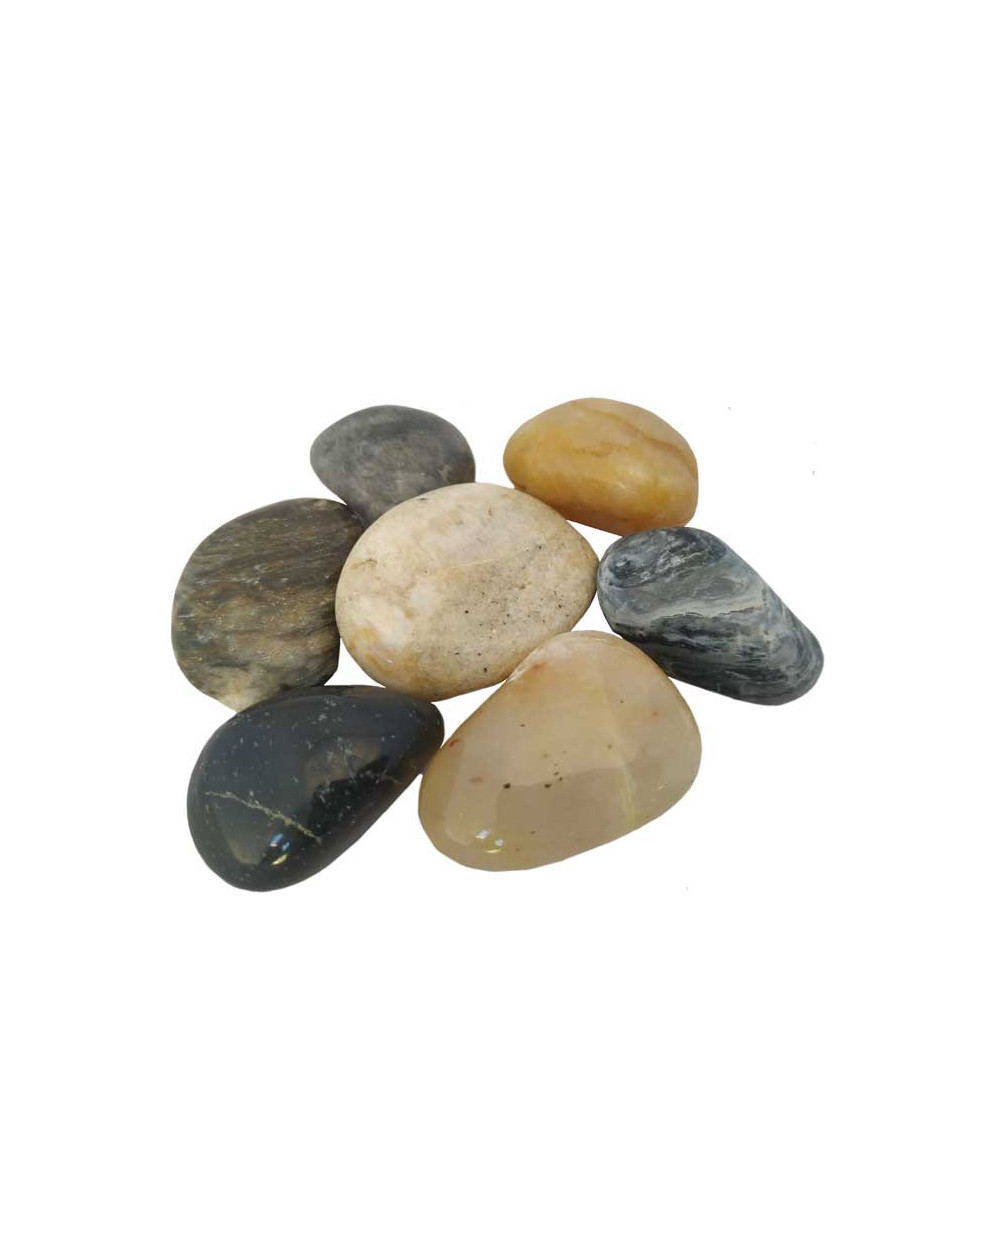 piedras decorativas sodimac easy baratas